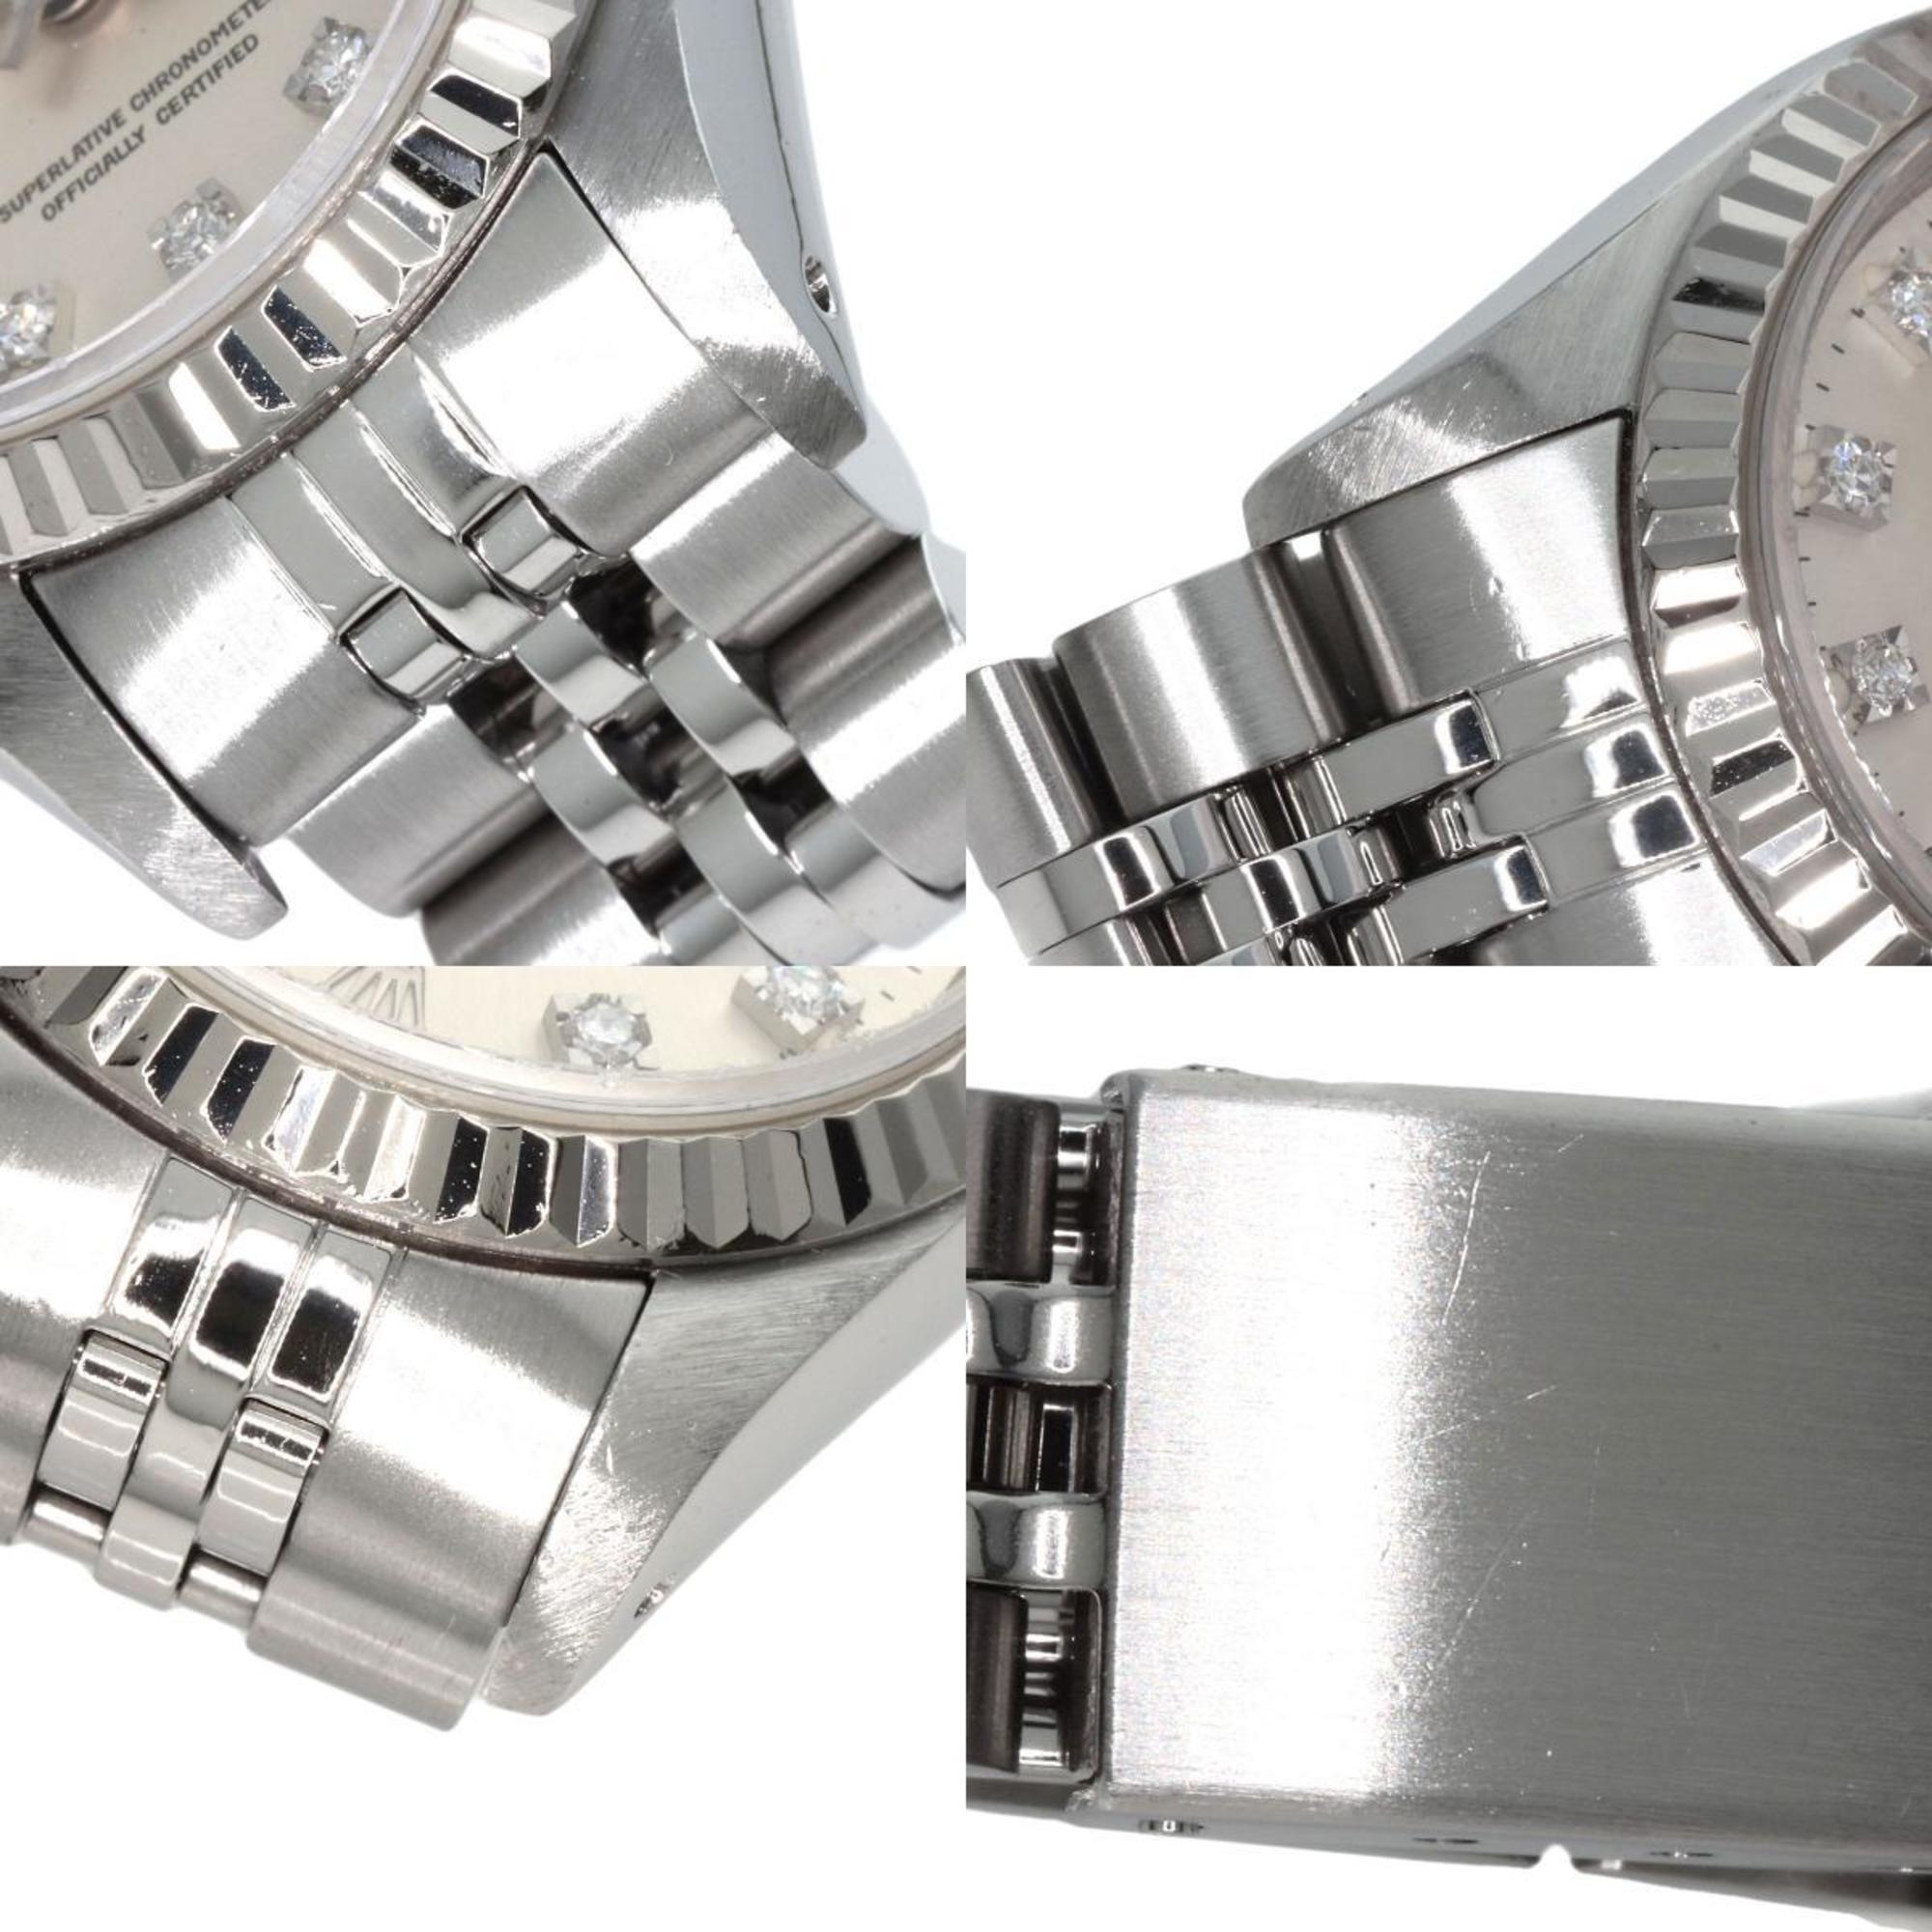 Rolex 69174G Datejust 10P Diamond Watch Stainless Steel/SS/K18WG Ladies ROLEX